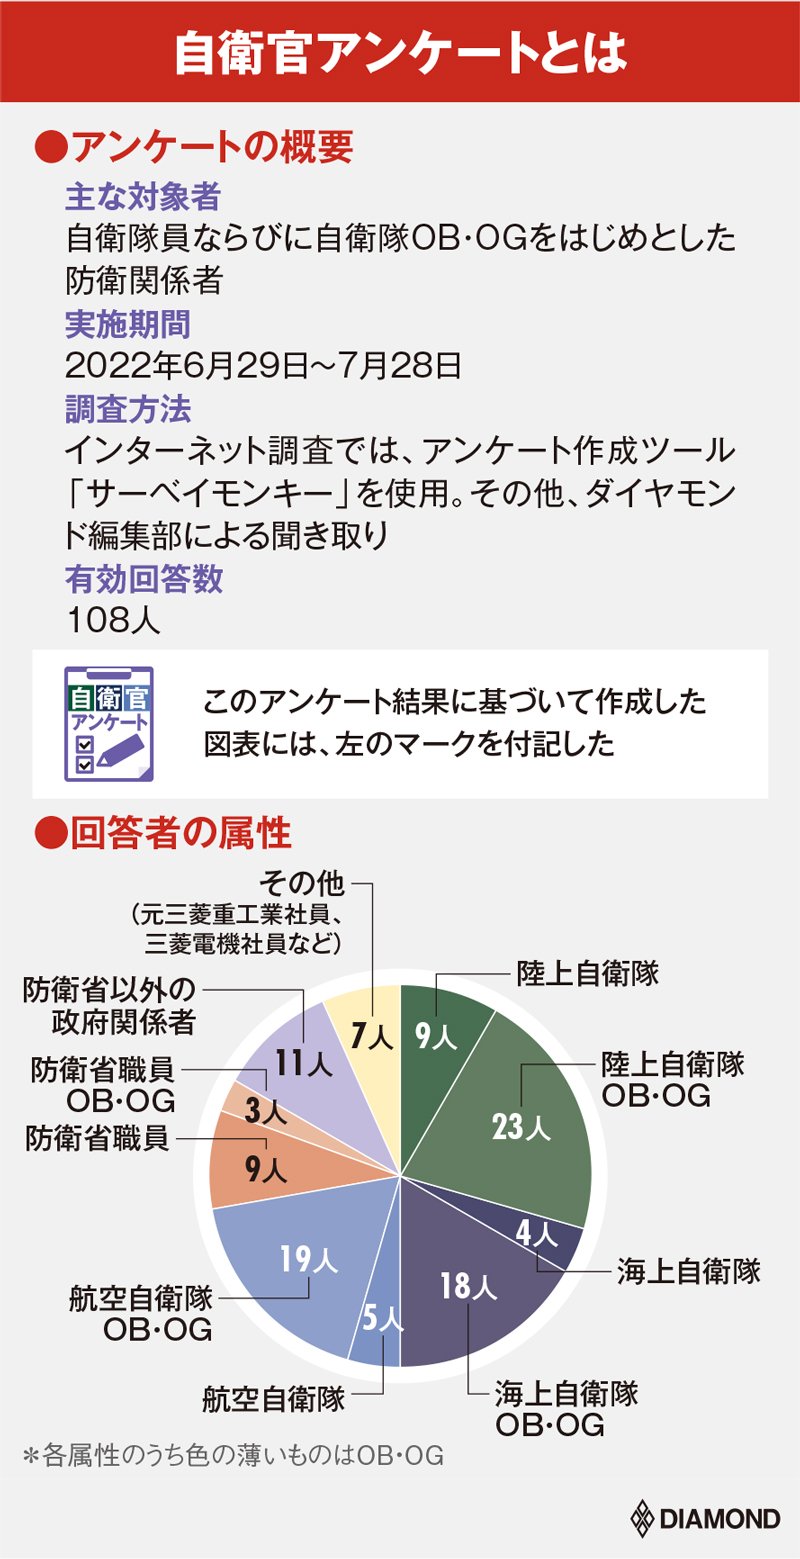 日本の「防衛お宝技術を持つ企業」ランキング【自衛官108人が評価】3位